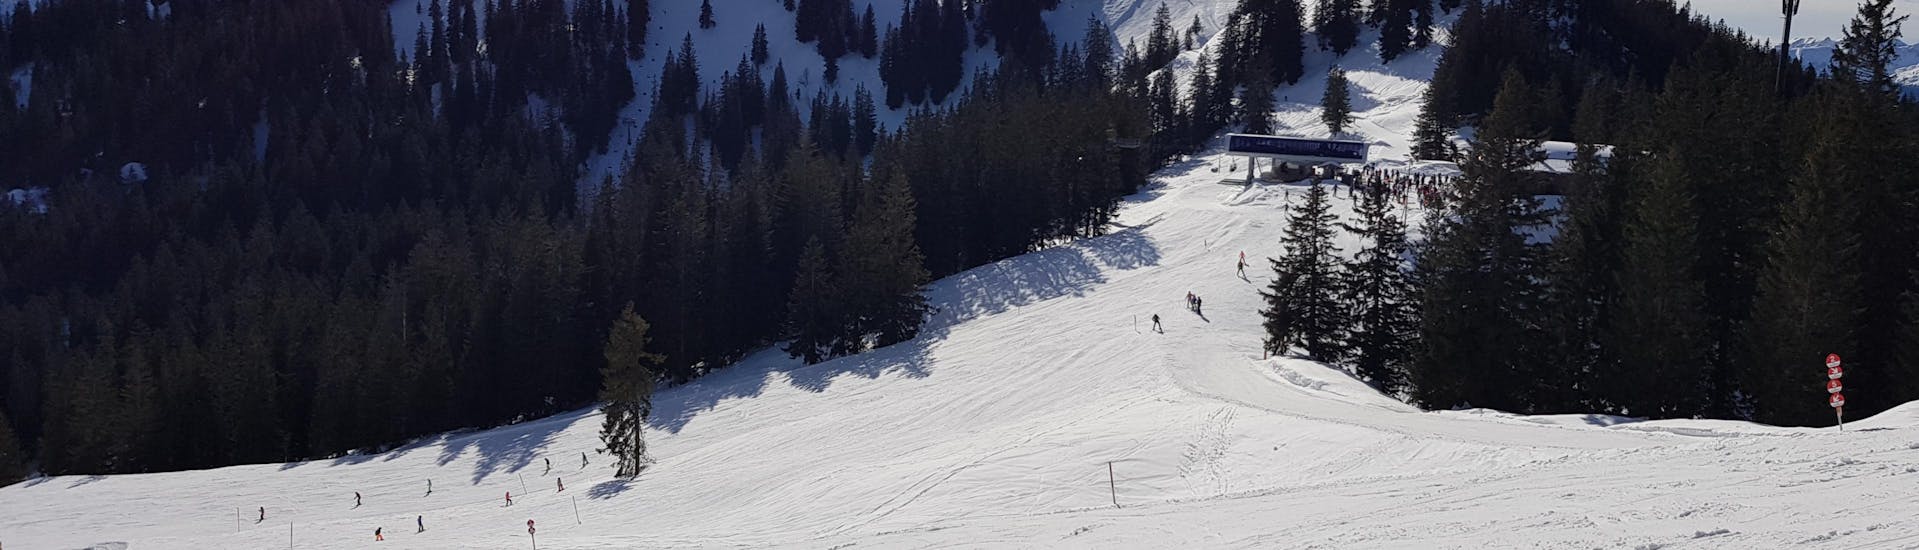 Adultos y niños esquiando en la estación de esquí de Spitzingsee.